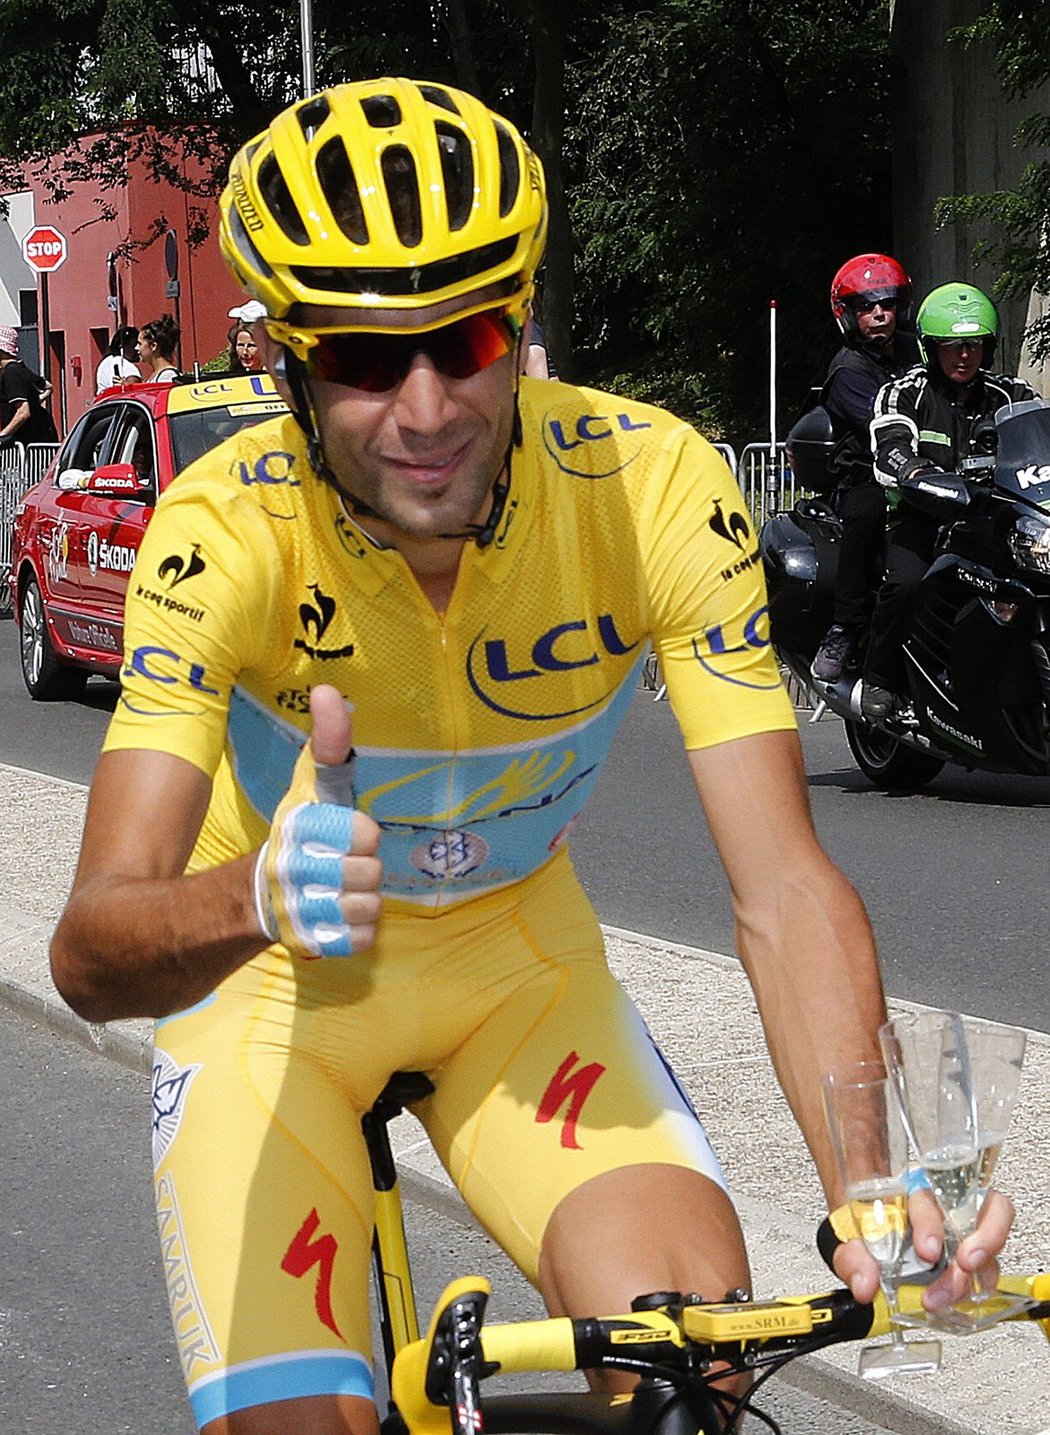 Kdo byl číslem 1 letošní Tour de France? Italský cyklista Vincenzo Nibali ze stáje Astana